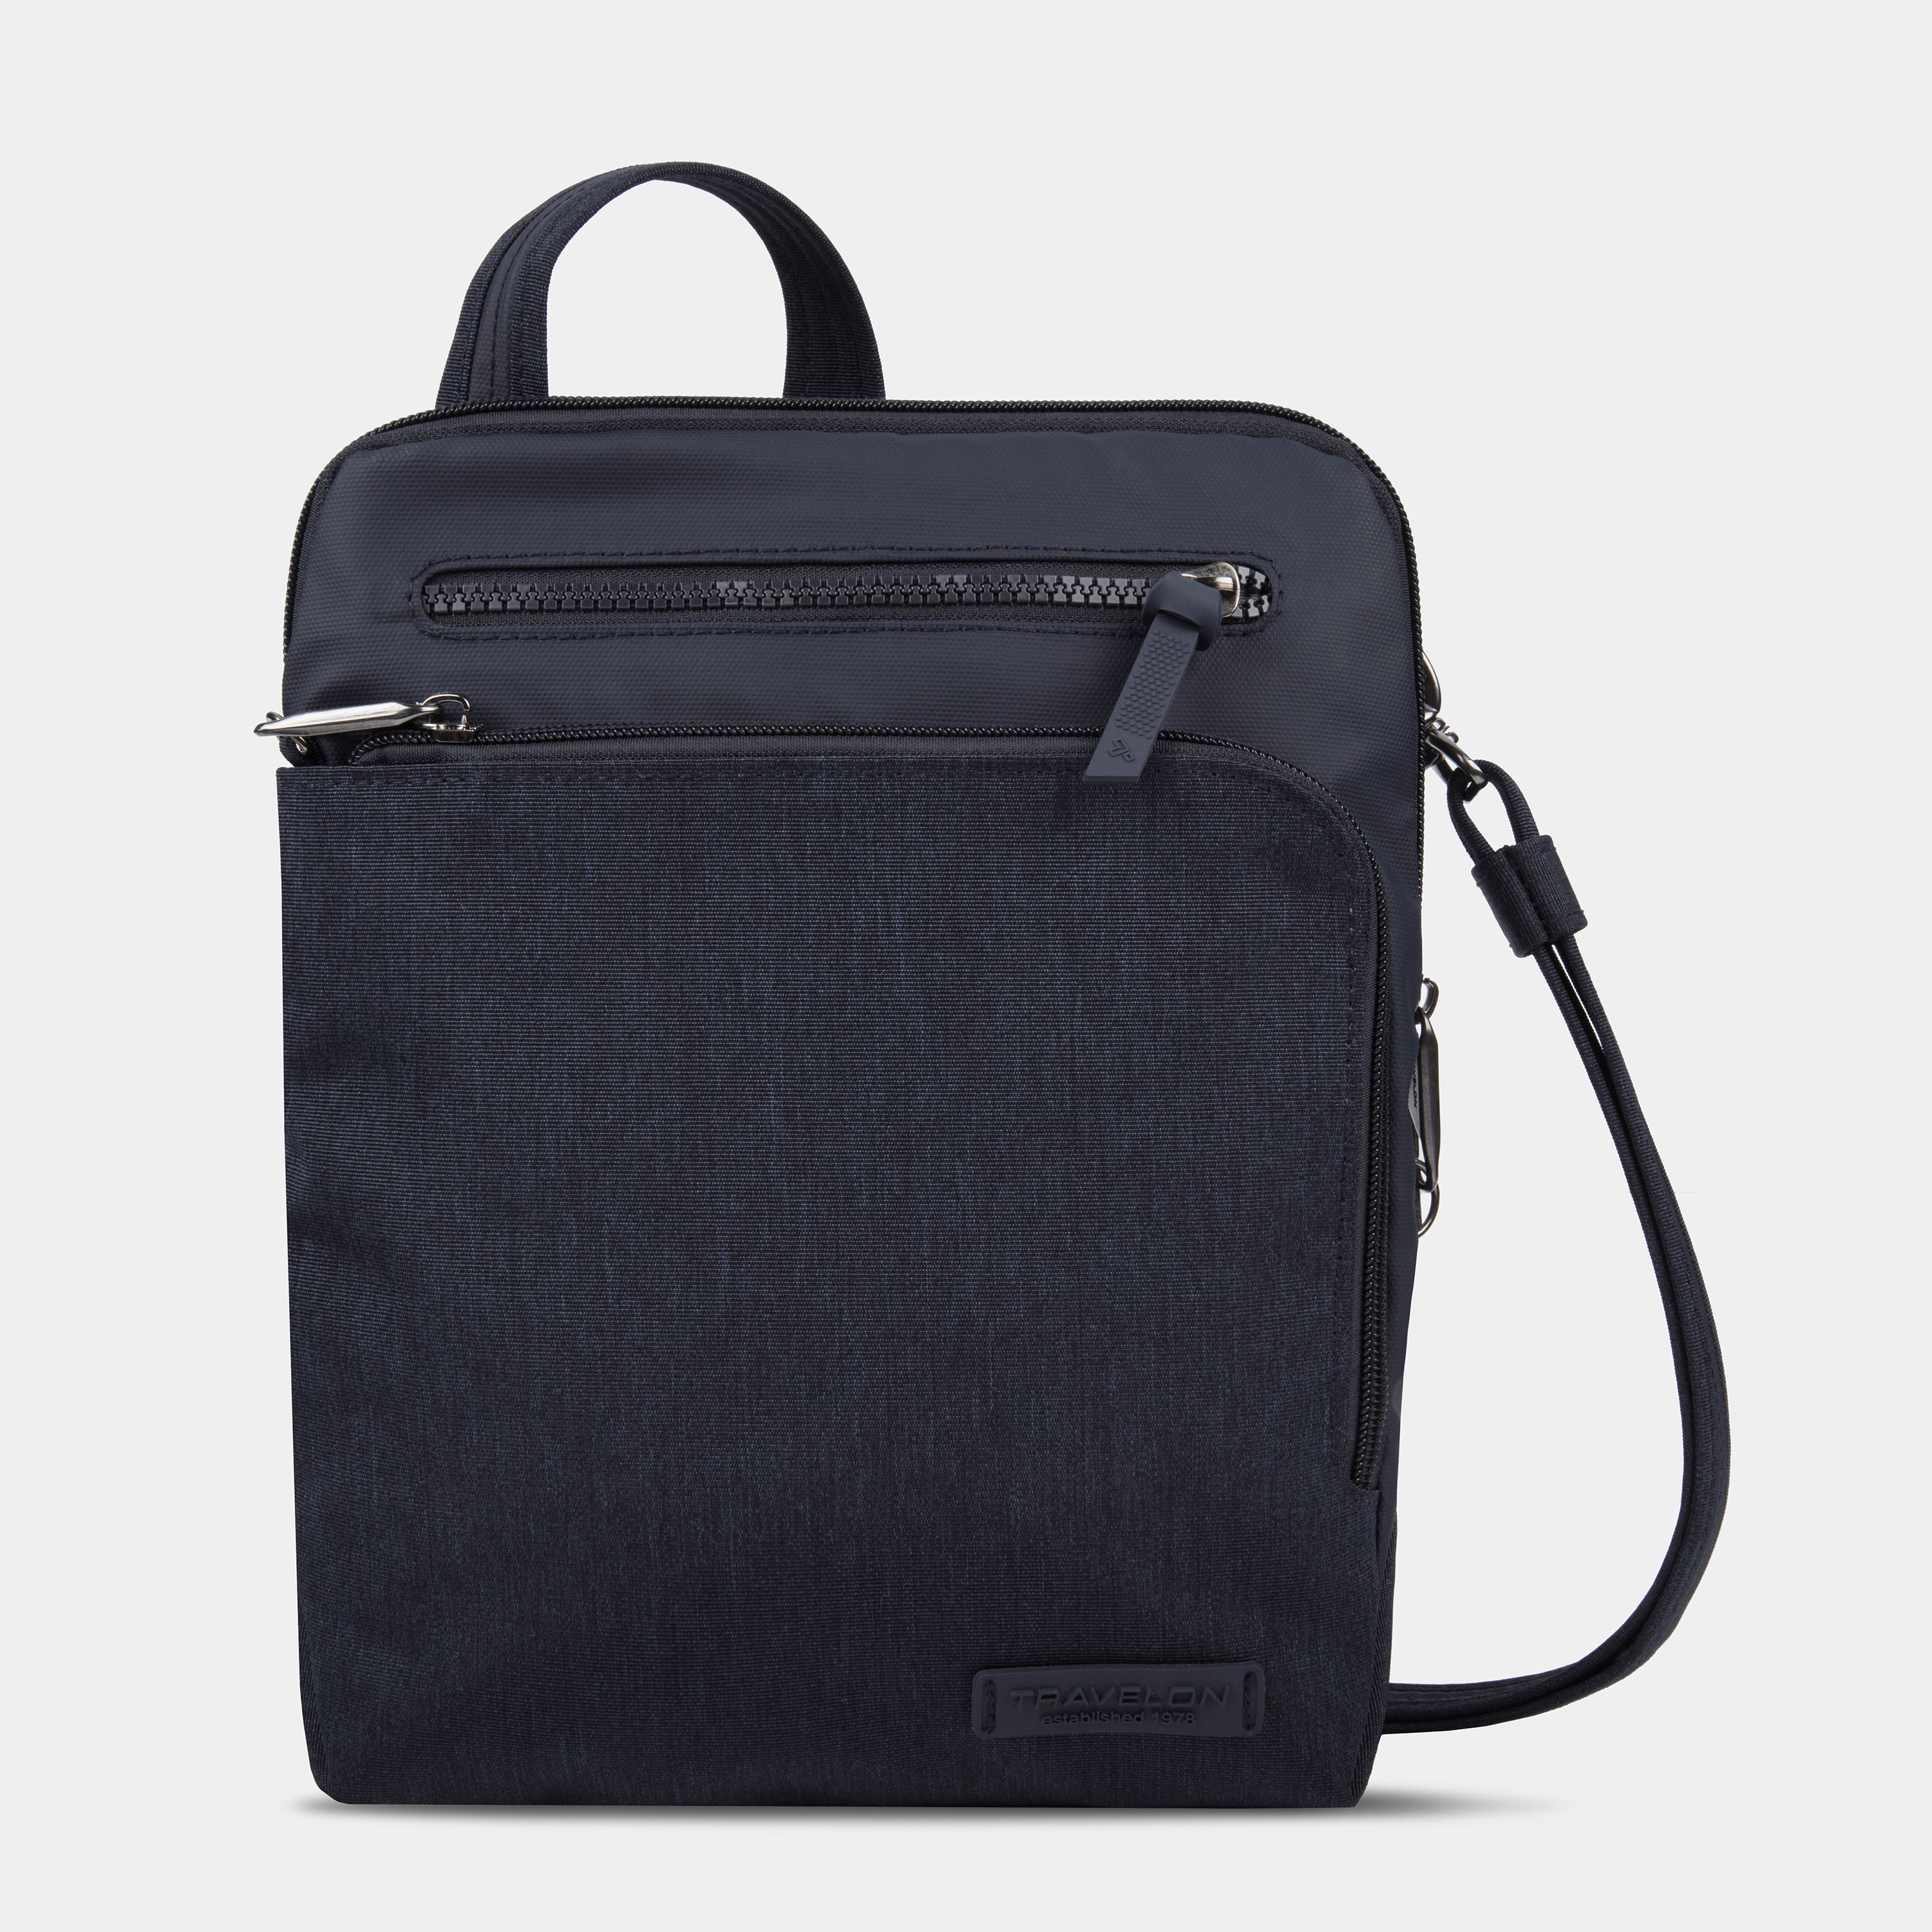 AAA.com l Travelon Anti-Theft Classic Mini Shoulder Bag